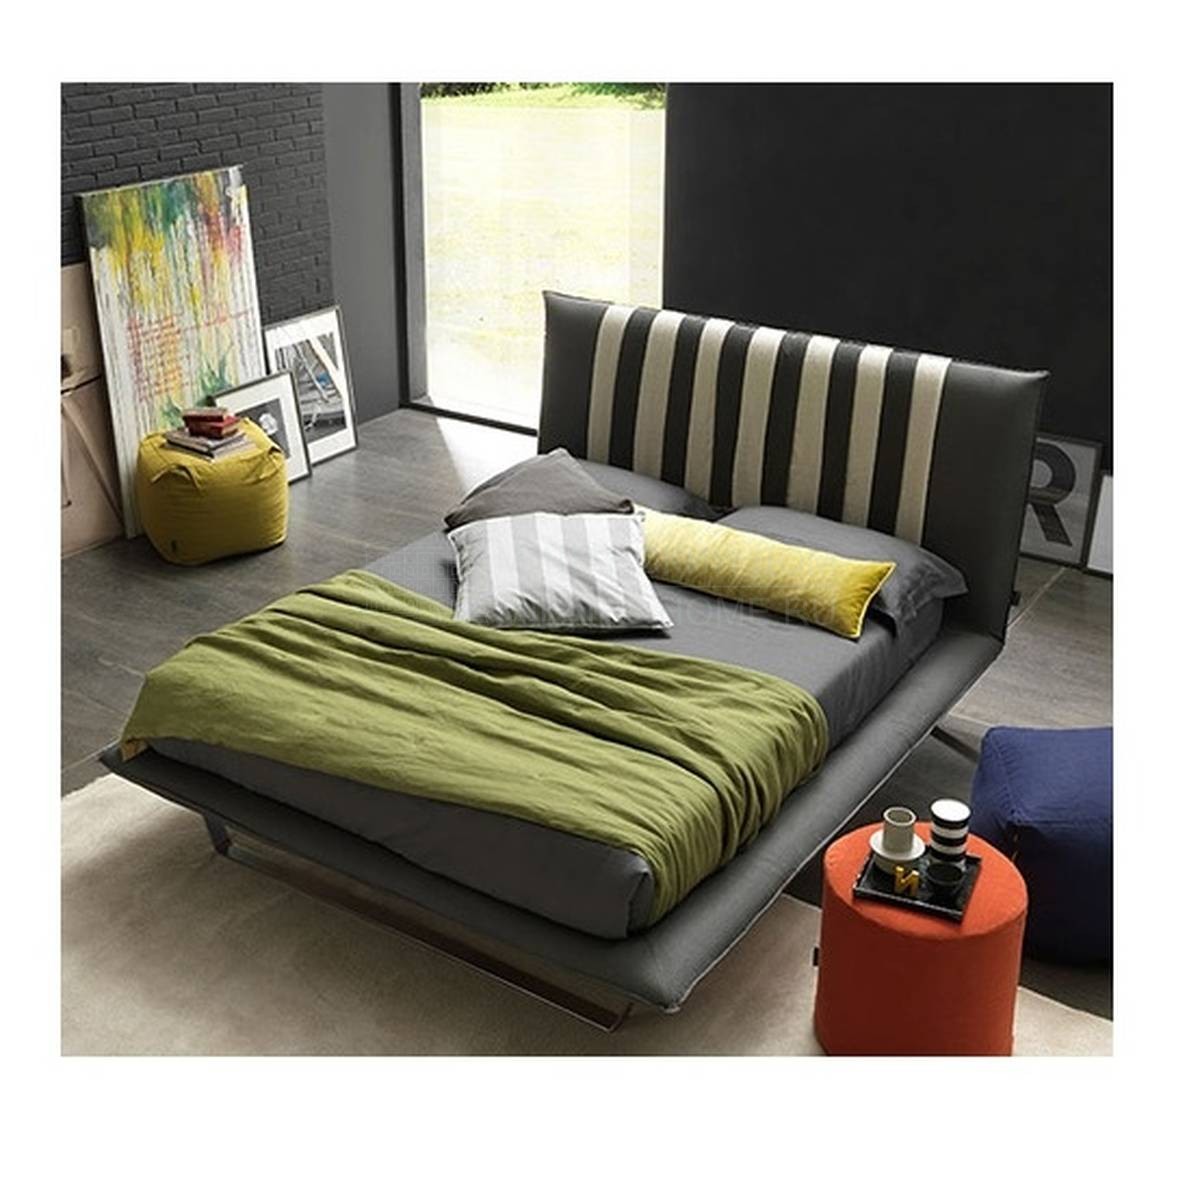 Двуспальная кровать Lovely Light из Италии фабрики BOLZAN